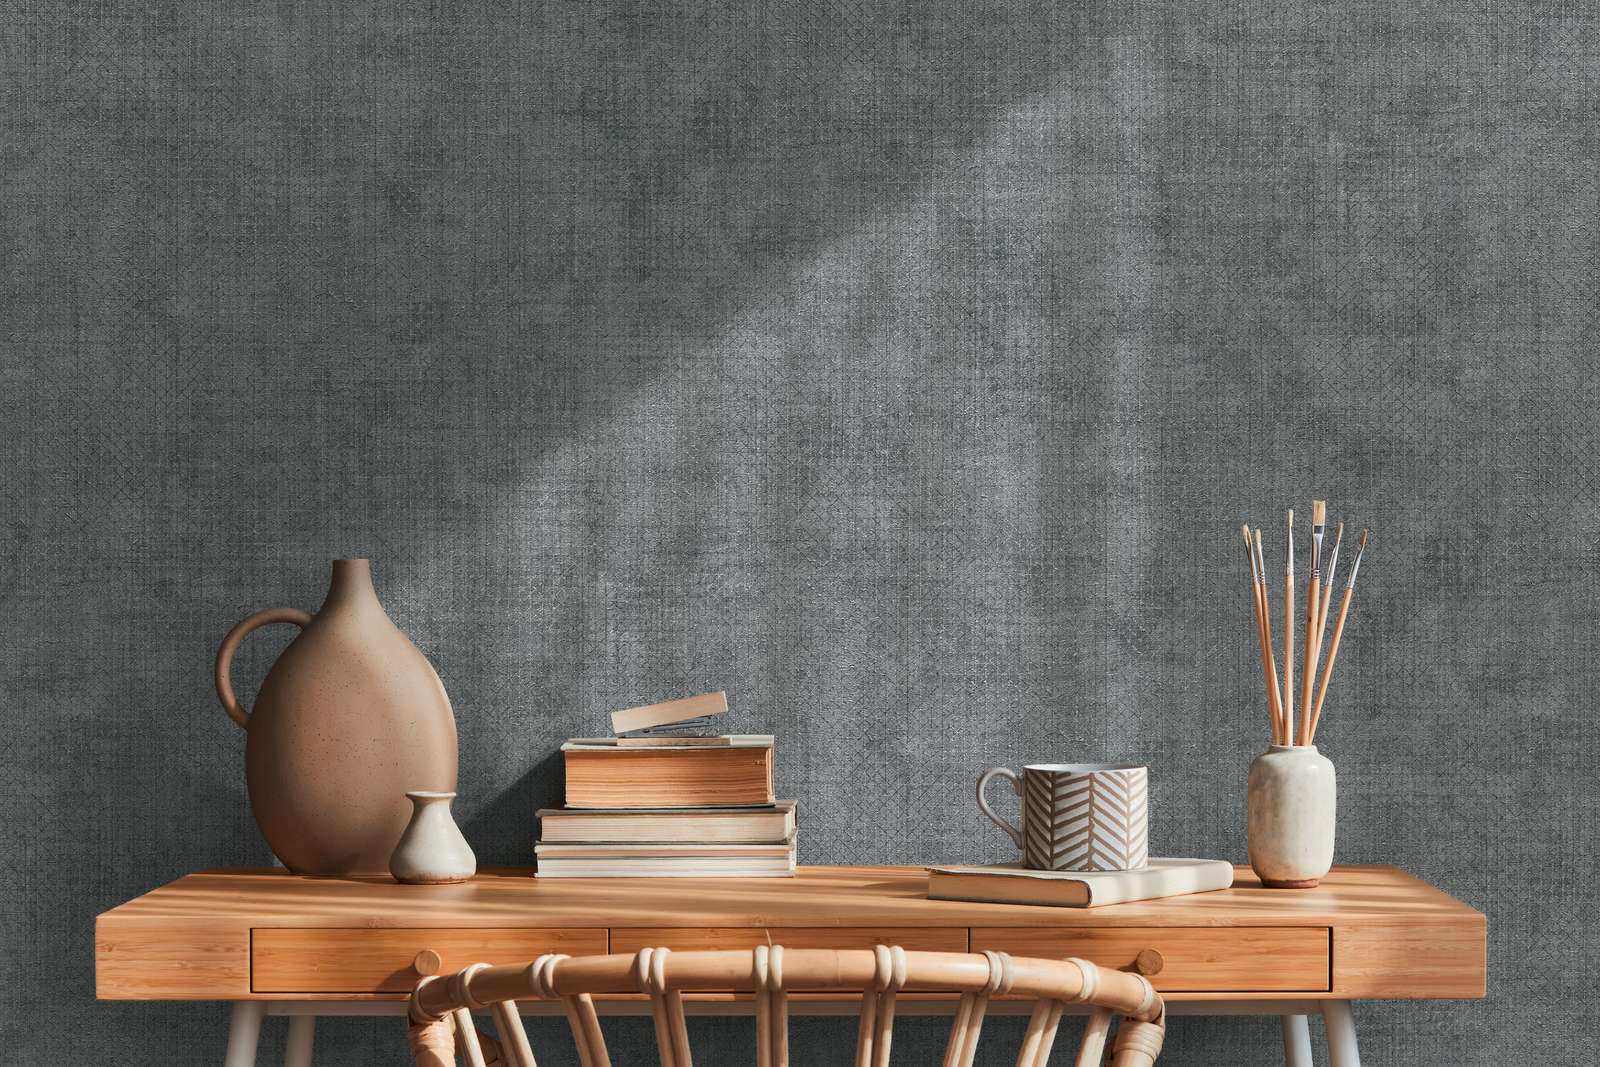             Papier peint gris foncé chiné avec motif de lignes métalliques
        